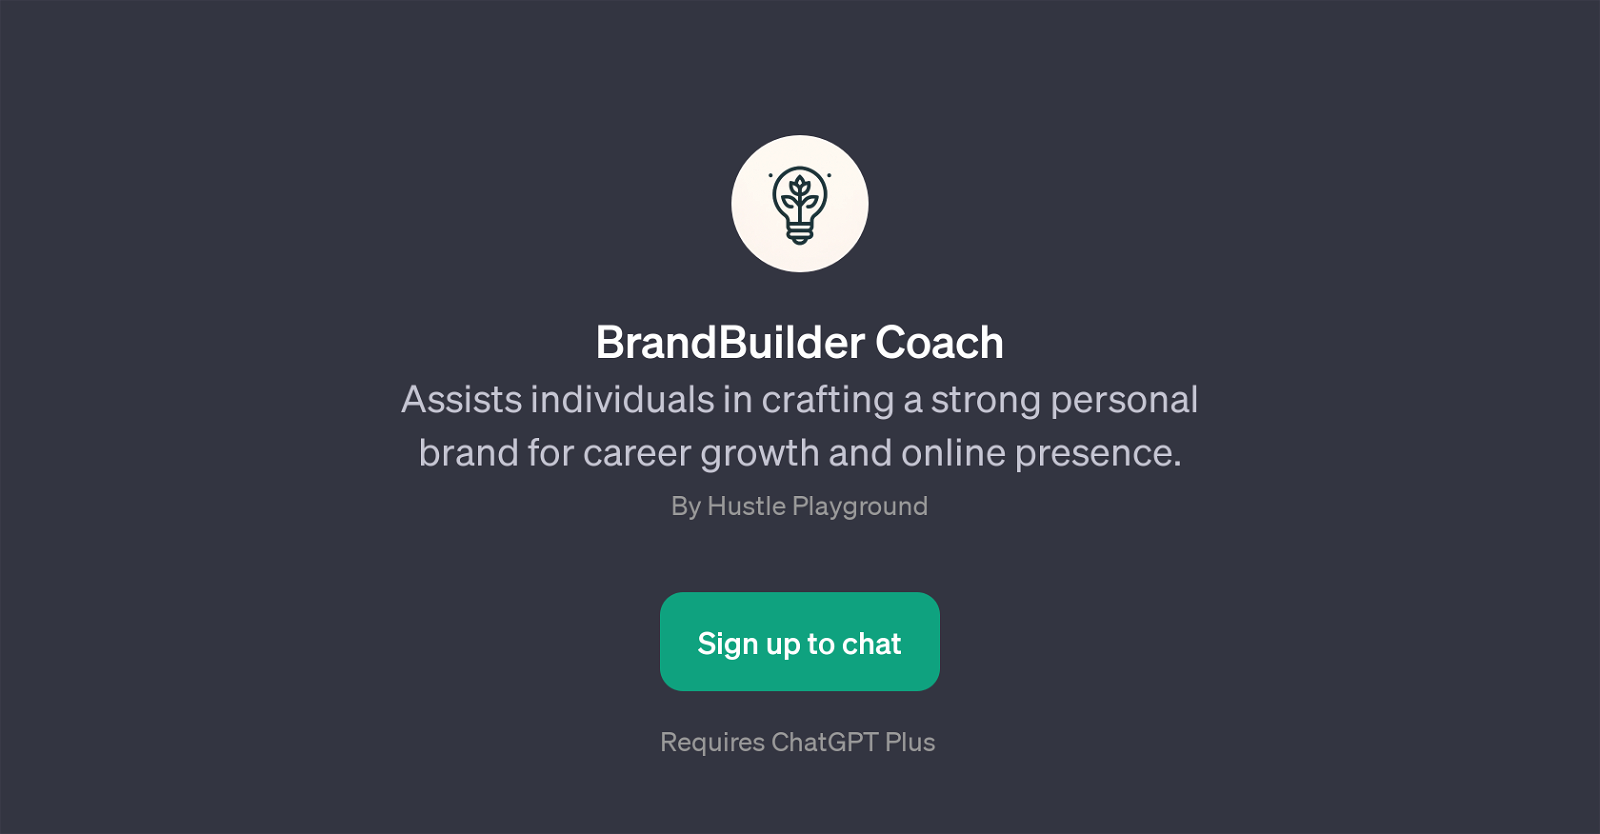 BrandBuilder Coach website